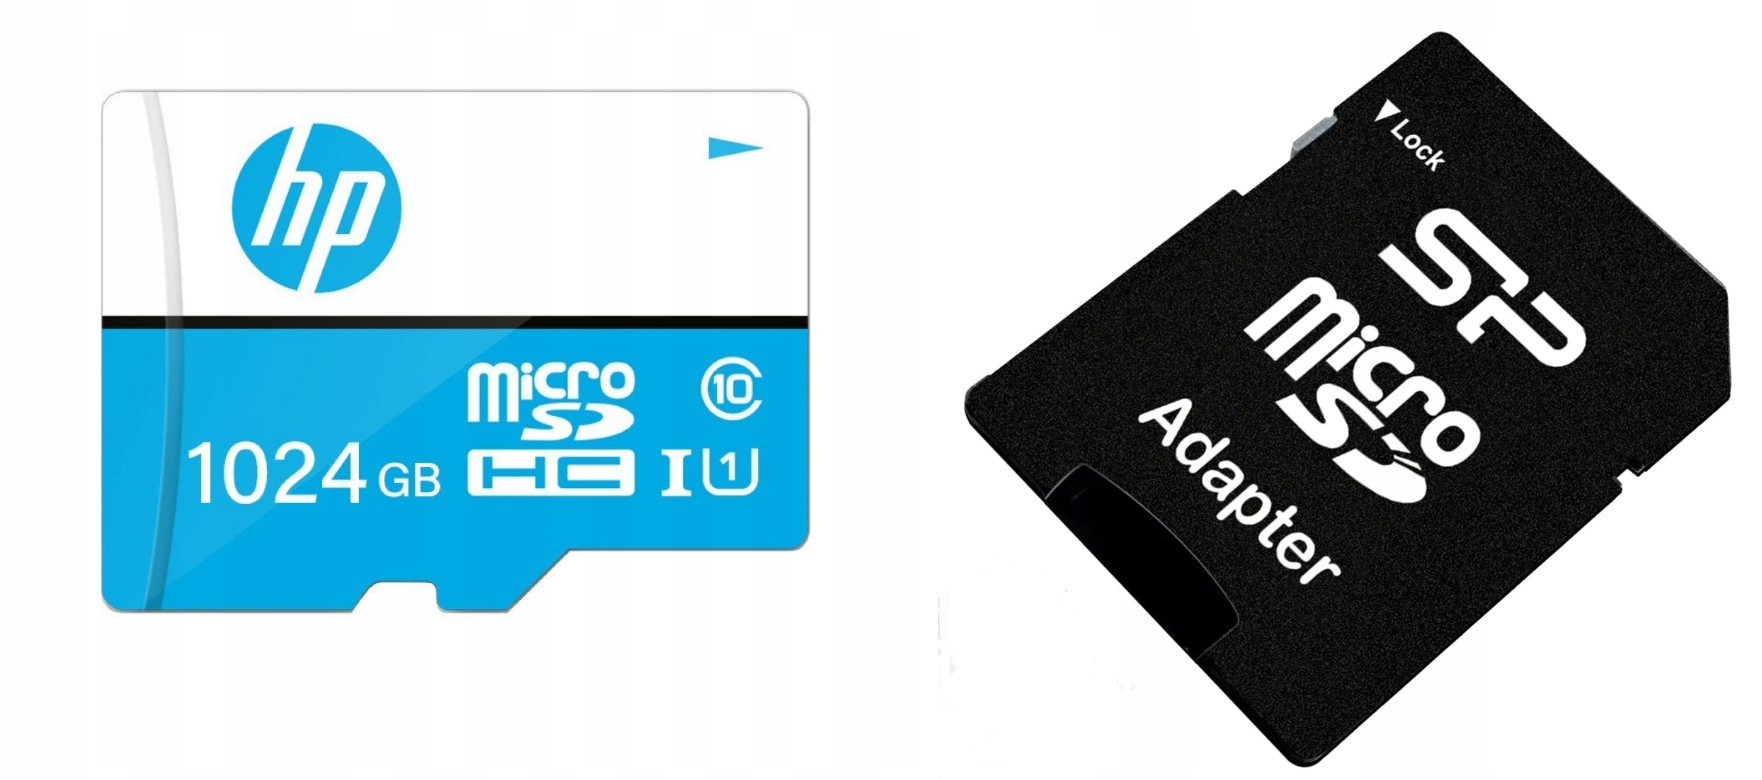 KARTA PAMIĘCI HP 1TB MICRO SD+ADAPTER. - Sklep, Opinie, Cena w Allegro.pl